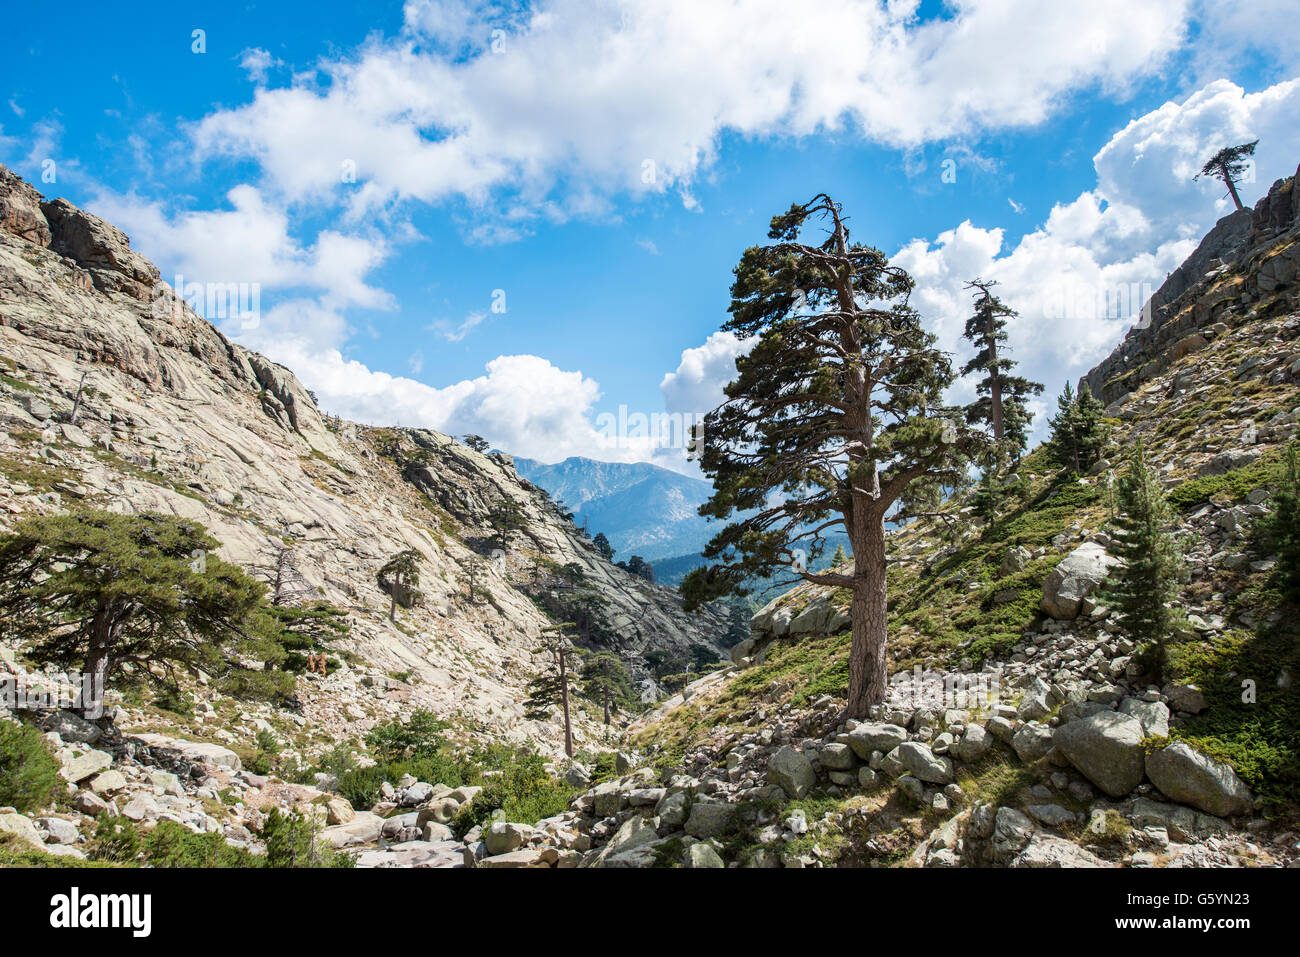 Mountainous landscape in Golo Valley, Nature Park of Corsica, Parc naturel régional de Corse, Corsica, France Stock Photo